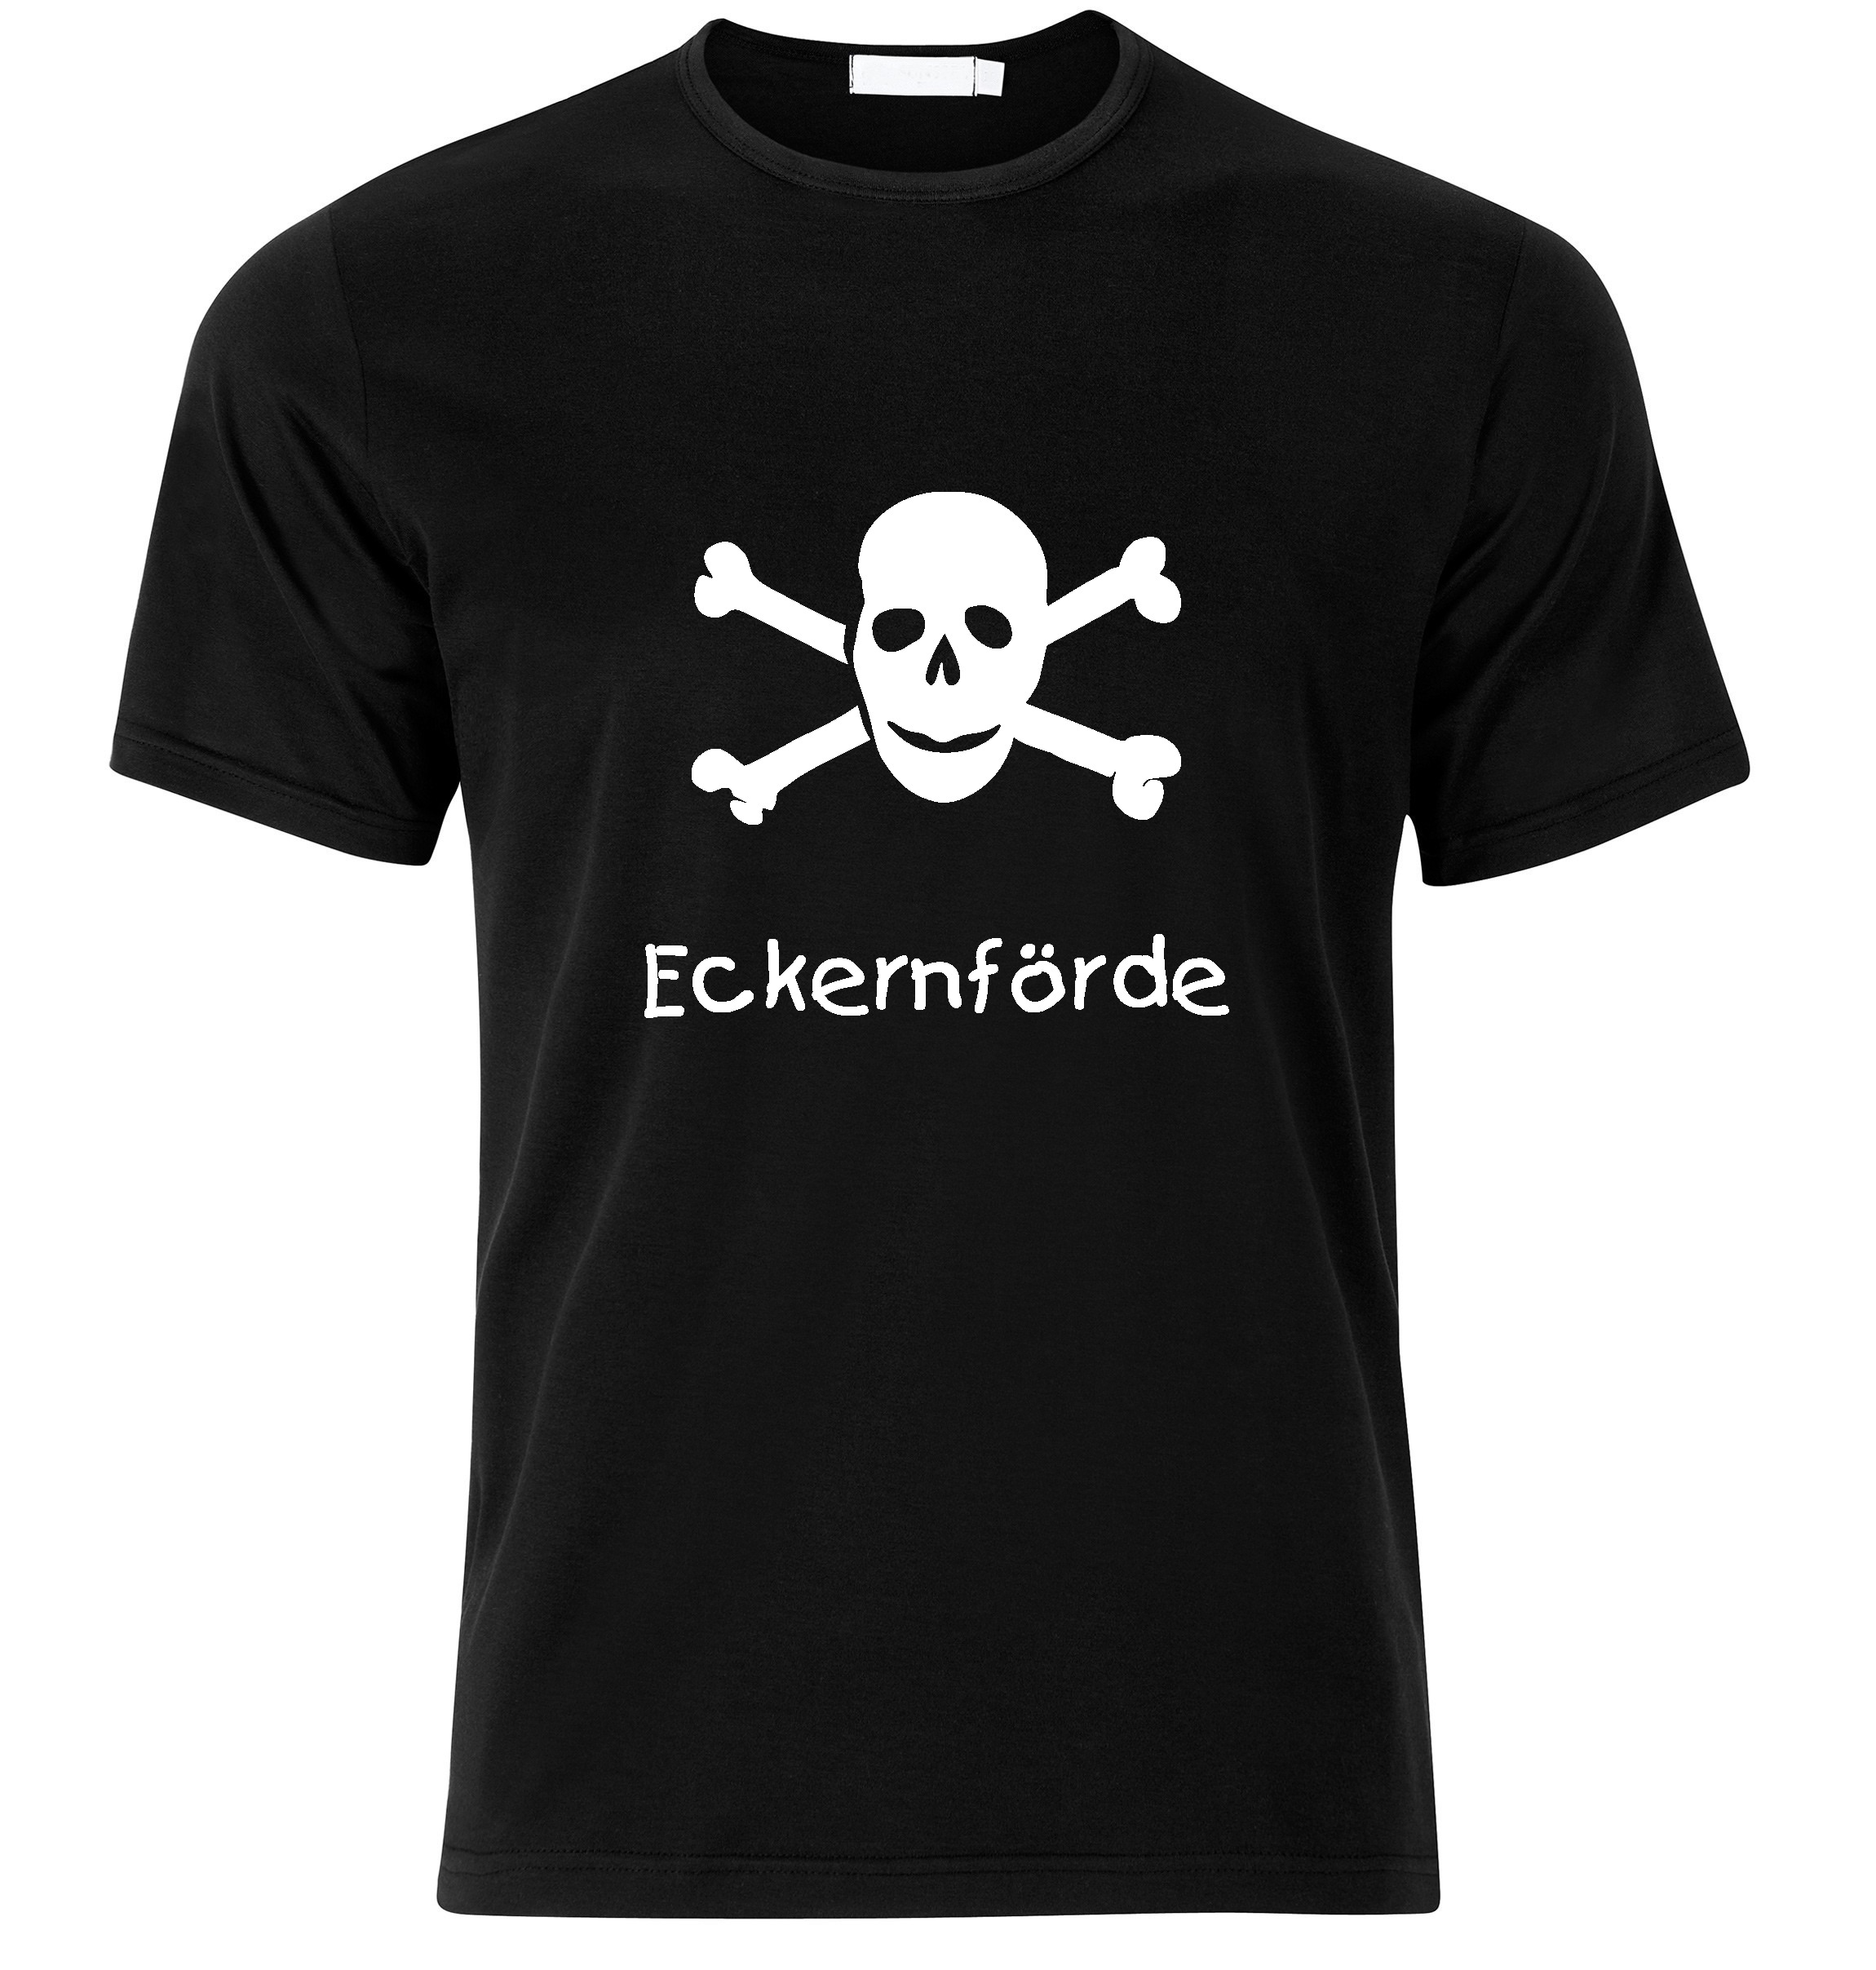 T-Shirt Eckernförde Jolly Roger, Totenkopf